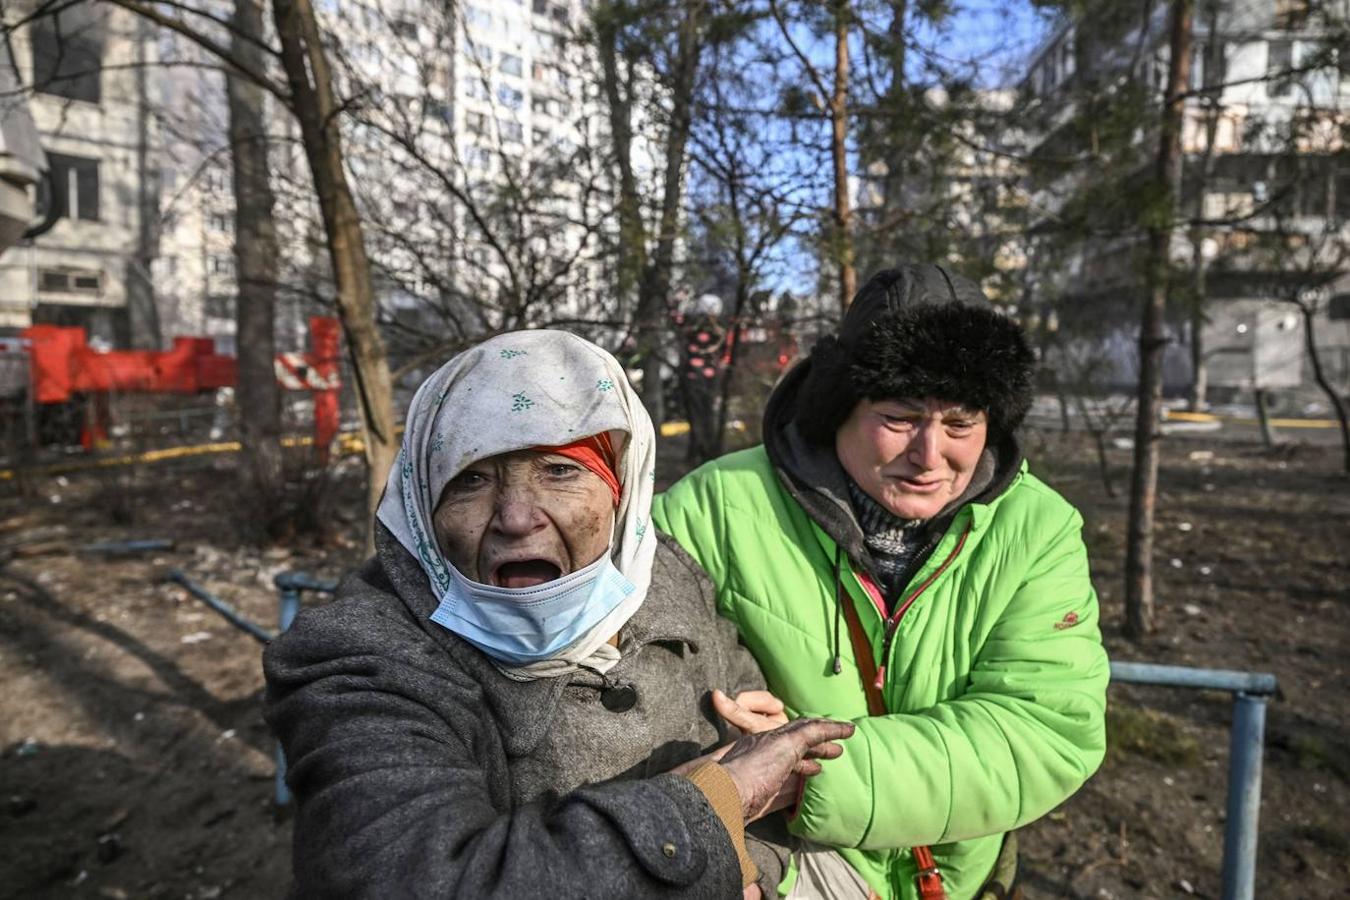 Los civiles, objetivo de las bombas. Las autoridades ucranianas denuncian ataques contra población civil a lo largo y ancho de todo el país. Según Naciones Unidas, hay más de 800 muertos civiles.